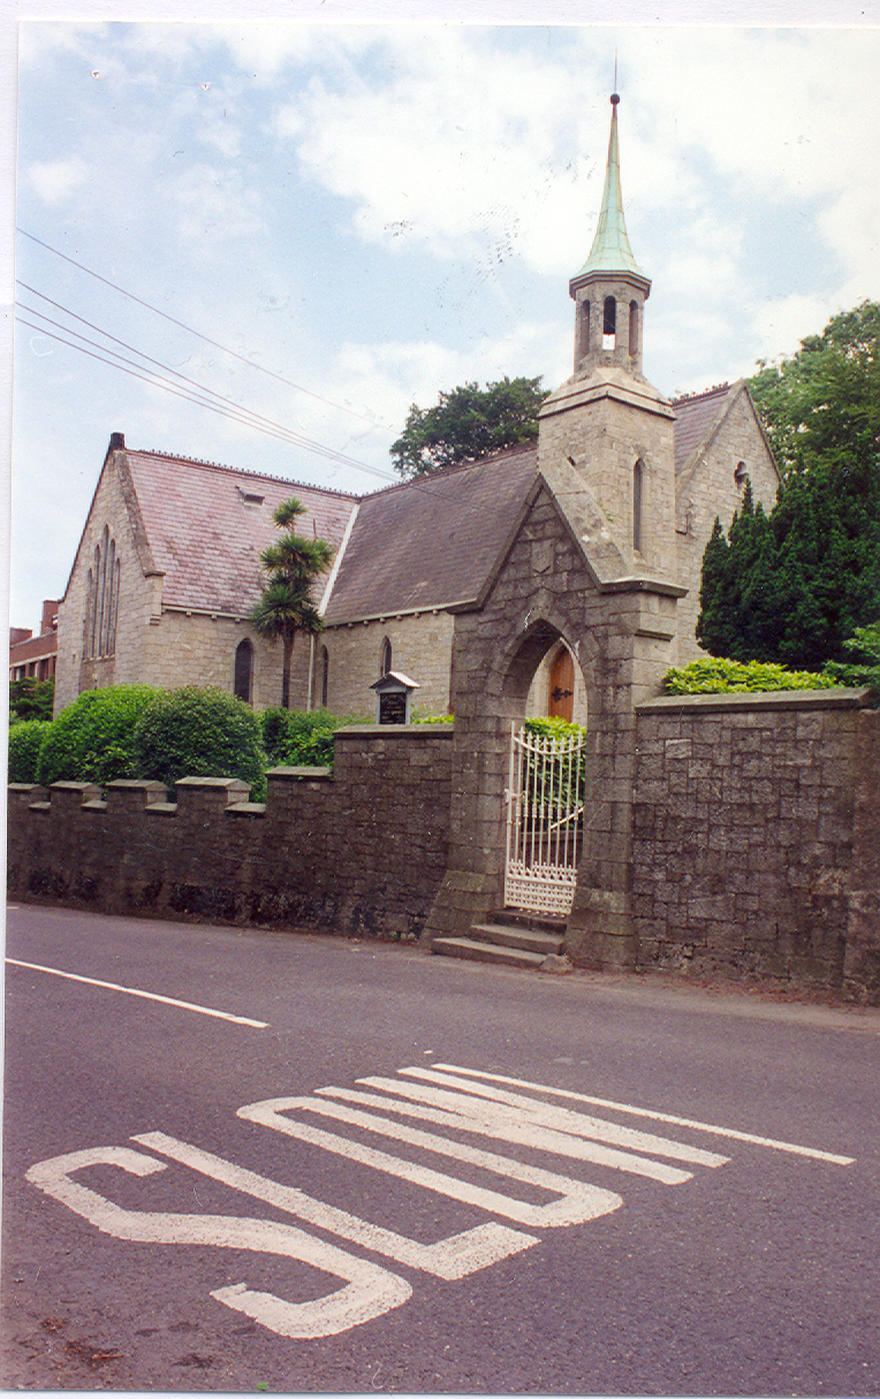 Holy Trinity Church in the parish of Killiney–Holy Trinity